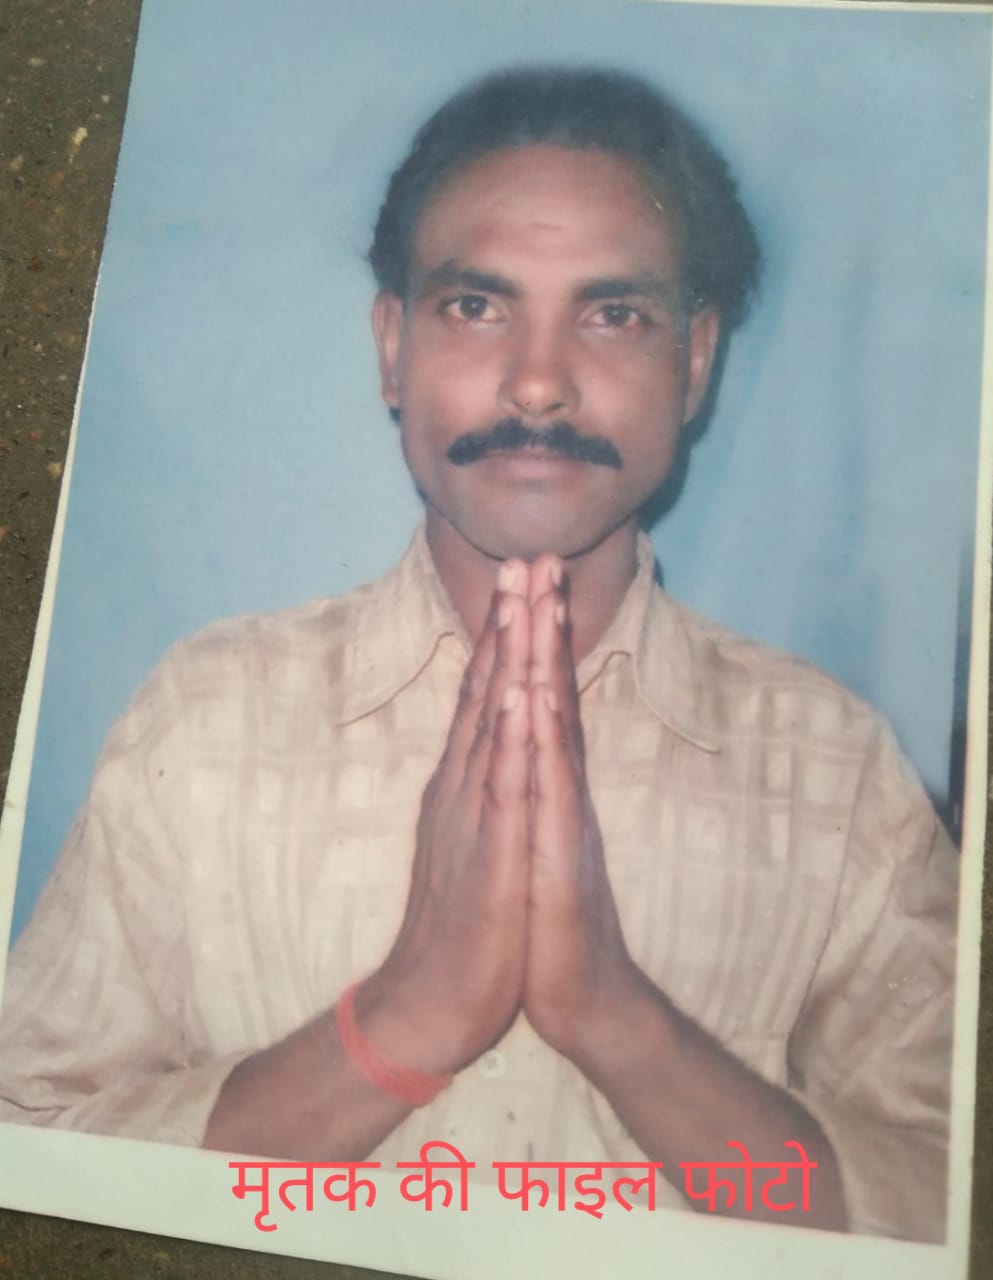 बरमपुरा में अवैध असलाह,कुल्हाड़ी मैं घायल 6 लोगों में एक की मौत,एक हफ्ते बाद भी पुलिस एक अभियुक्त को कर सकी गिरफ्तार